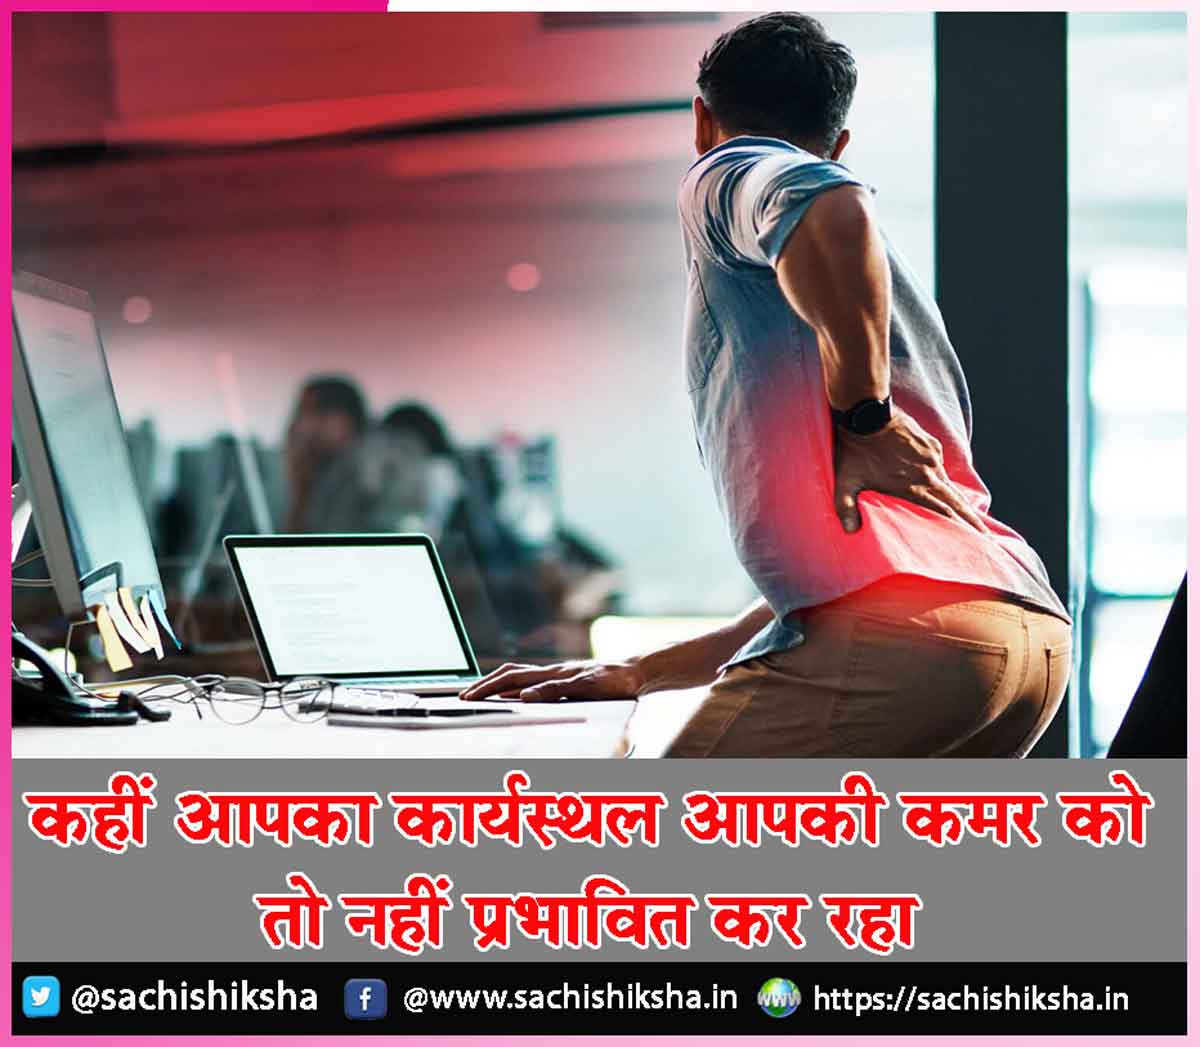 कहीं आपका कार्यस्थल आपकी कमर को तो नहीं प्रभावित कर रहा - sachishiksha.in/is-your-workpl…